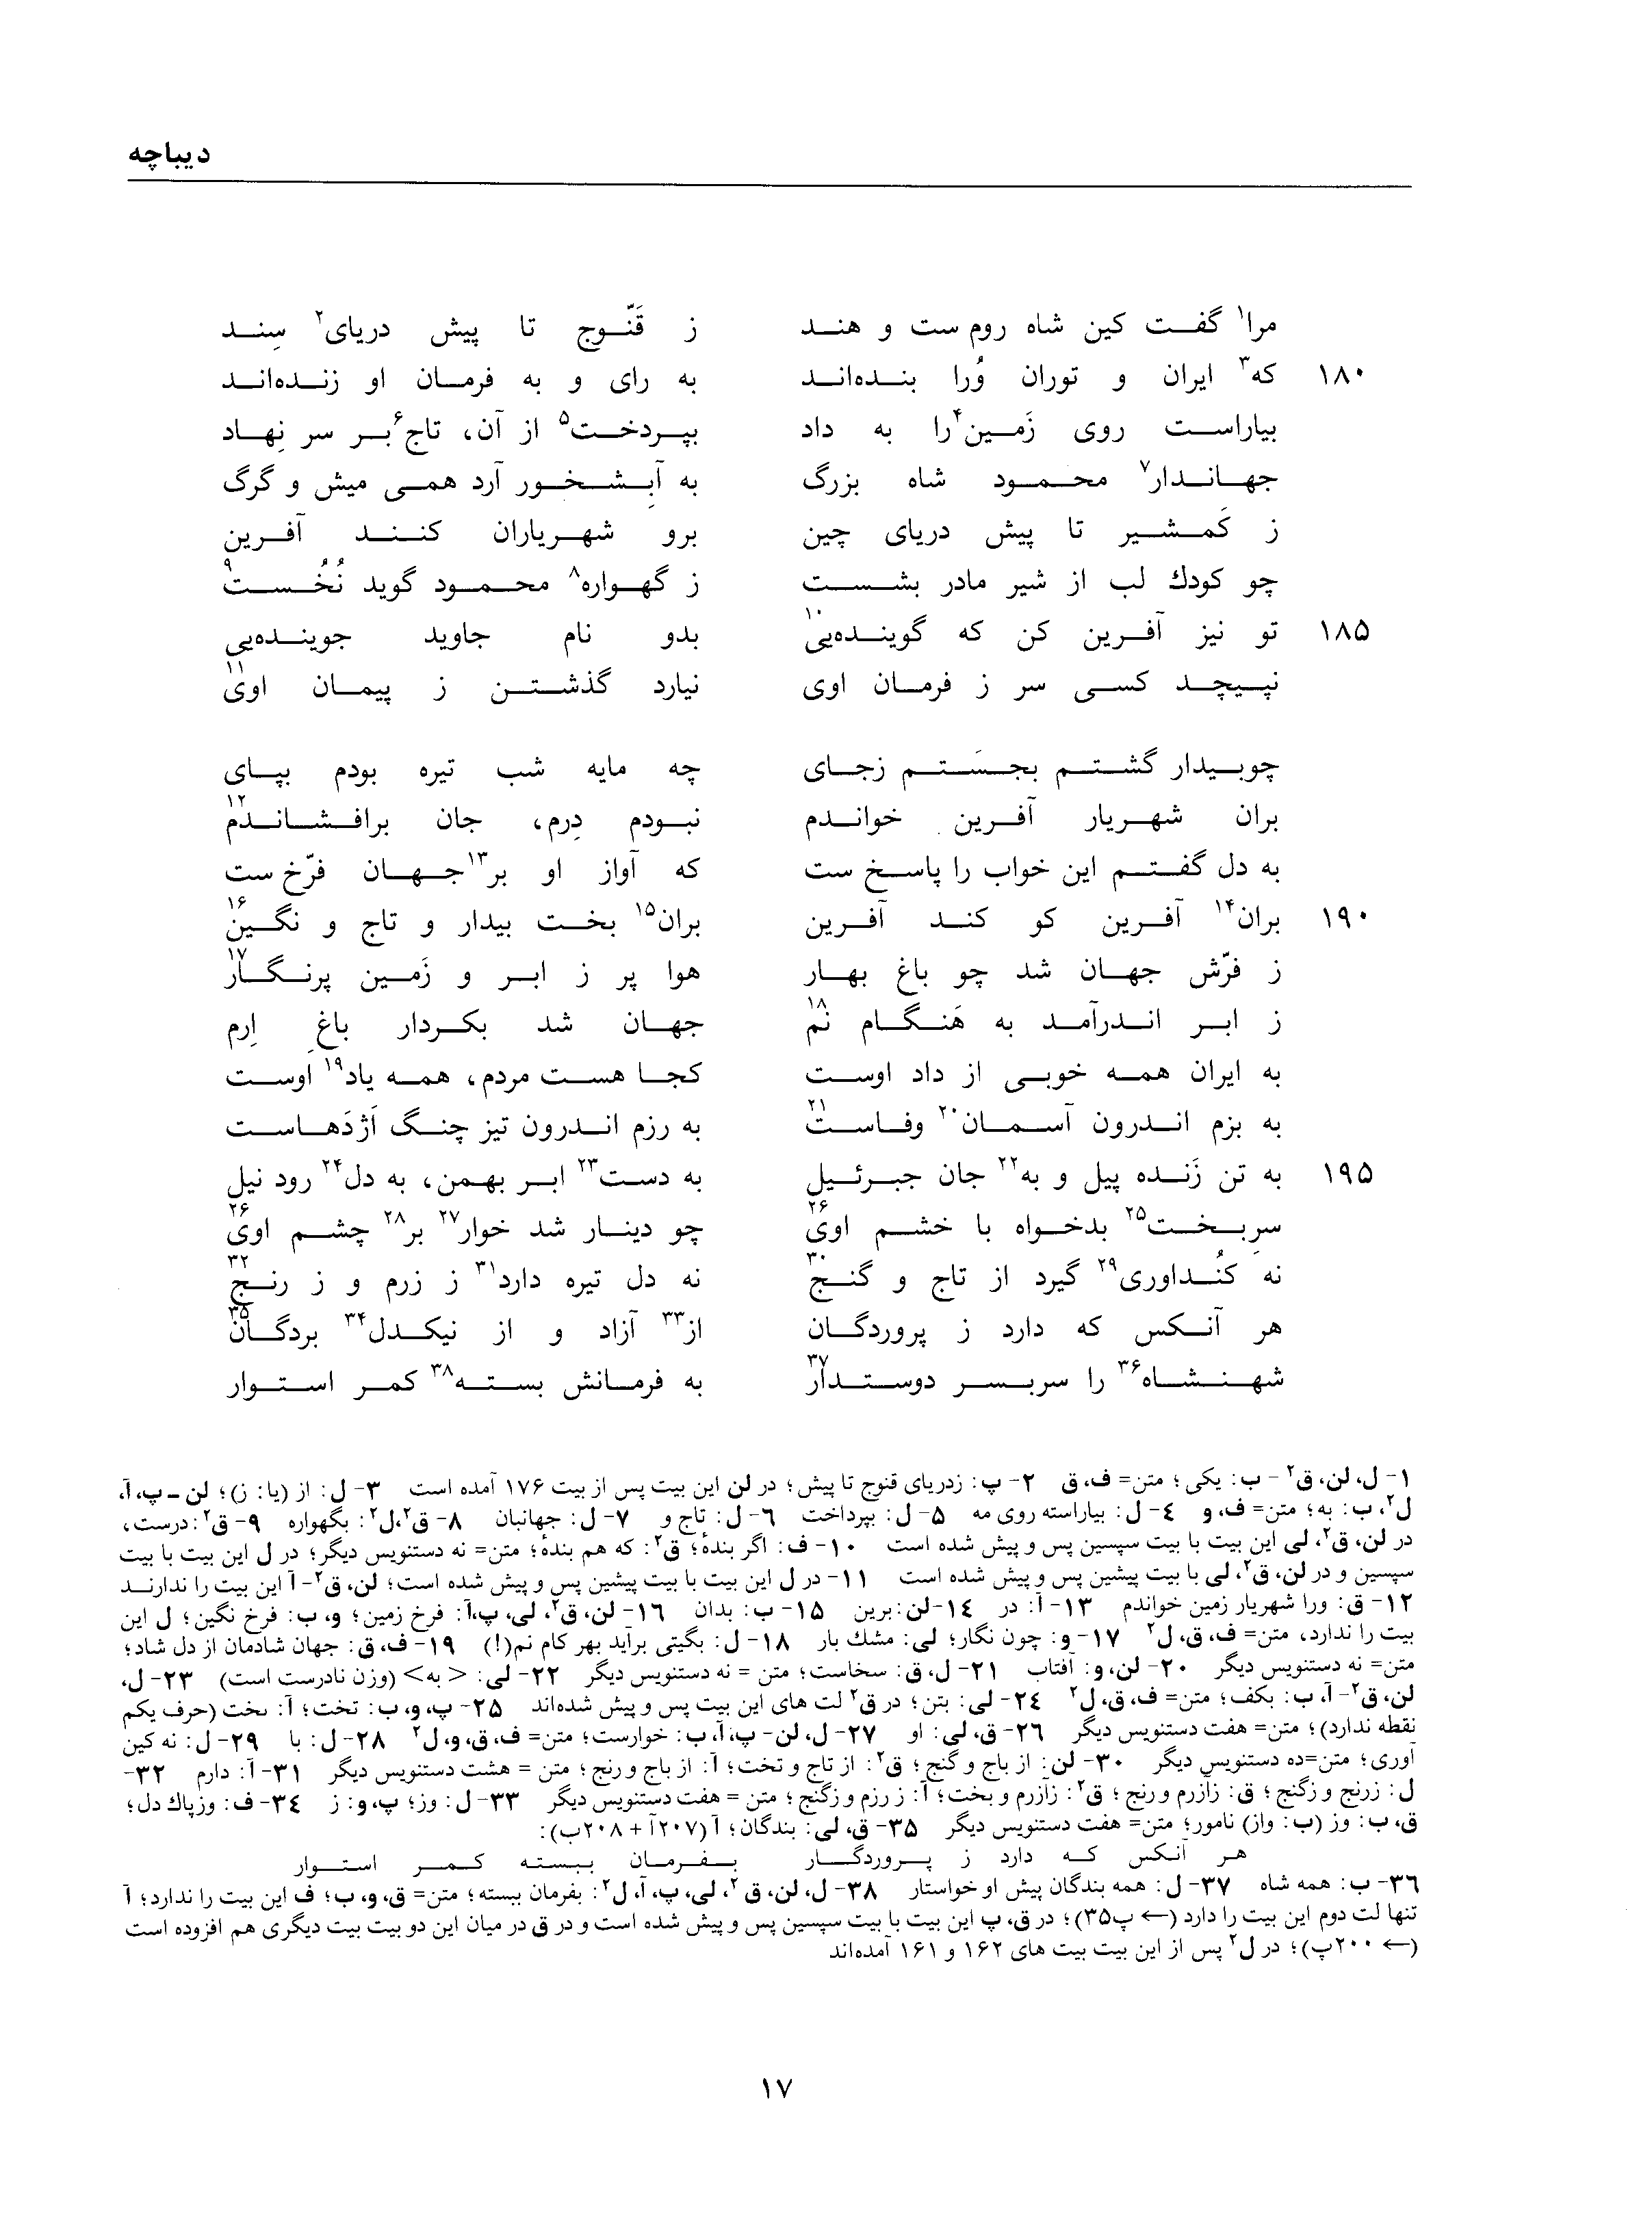 vol. 1, p. 17